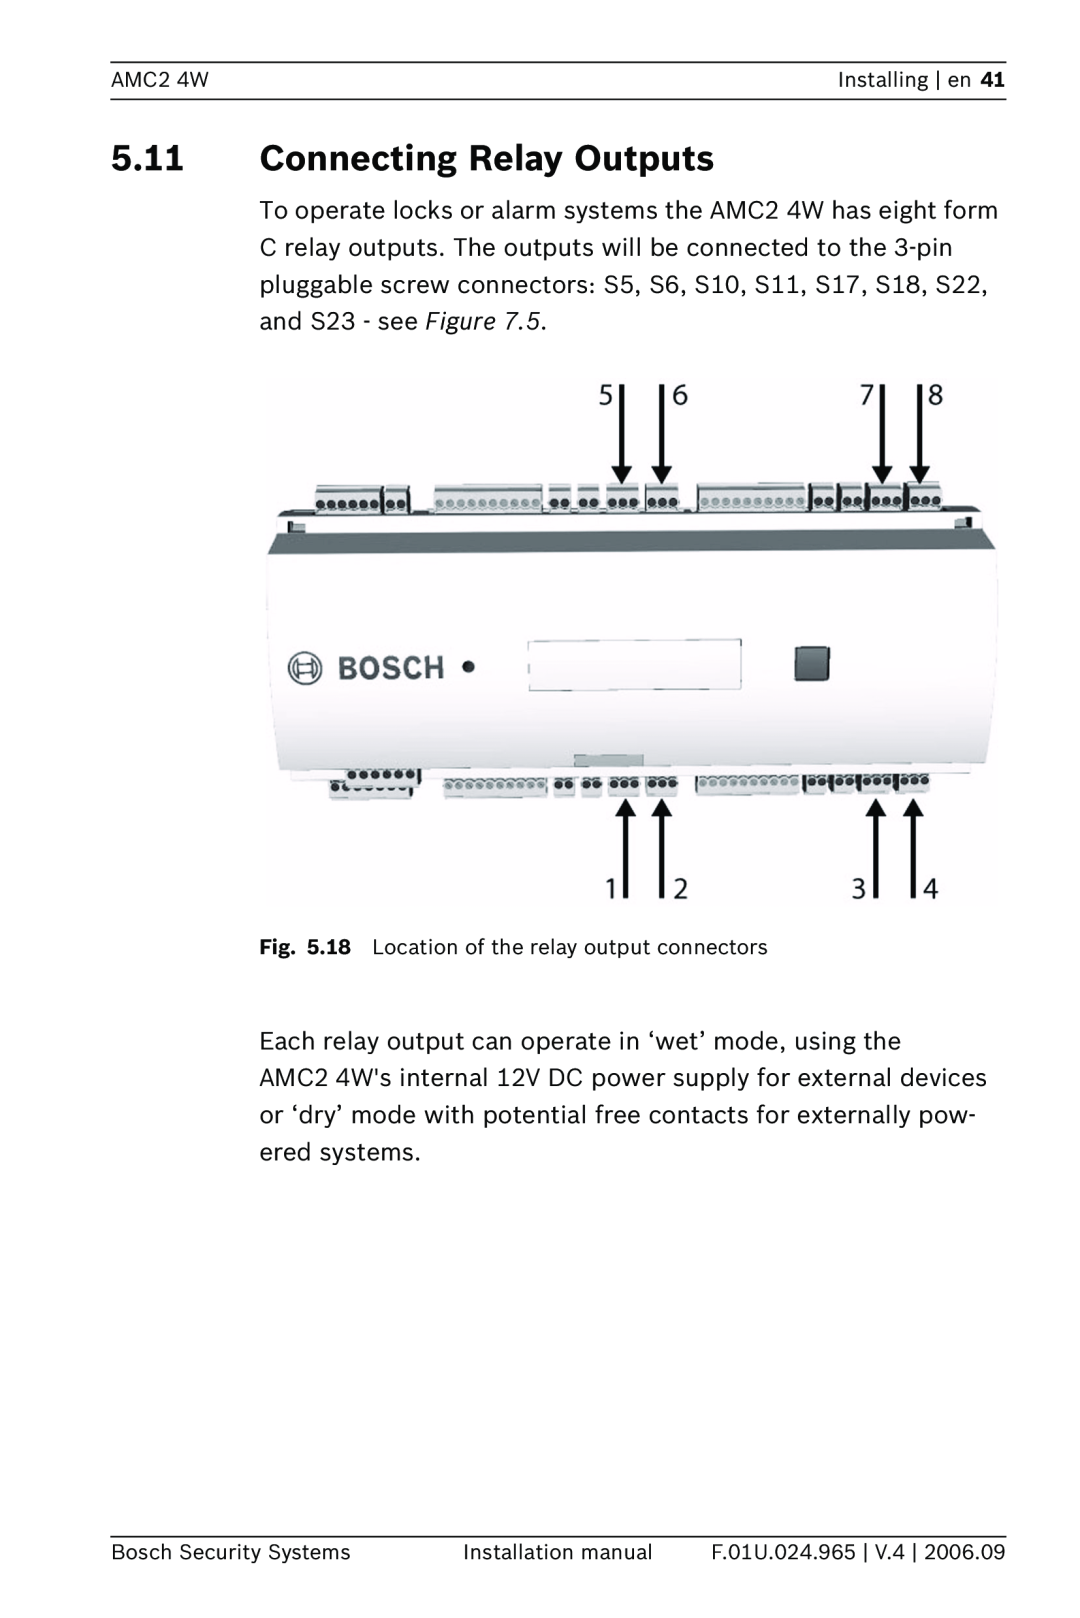 Bosch Appliances APC-AMC2-4W 5.11Connecting Relay Outputs, AMC2 4W, Installing en, Bosch Security Systems, F.01U.024.965 